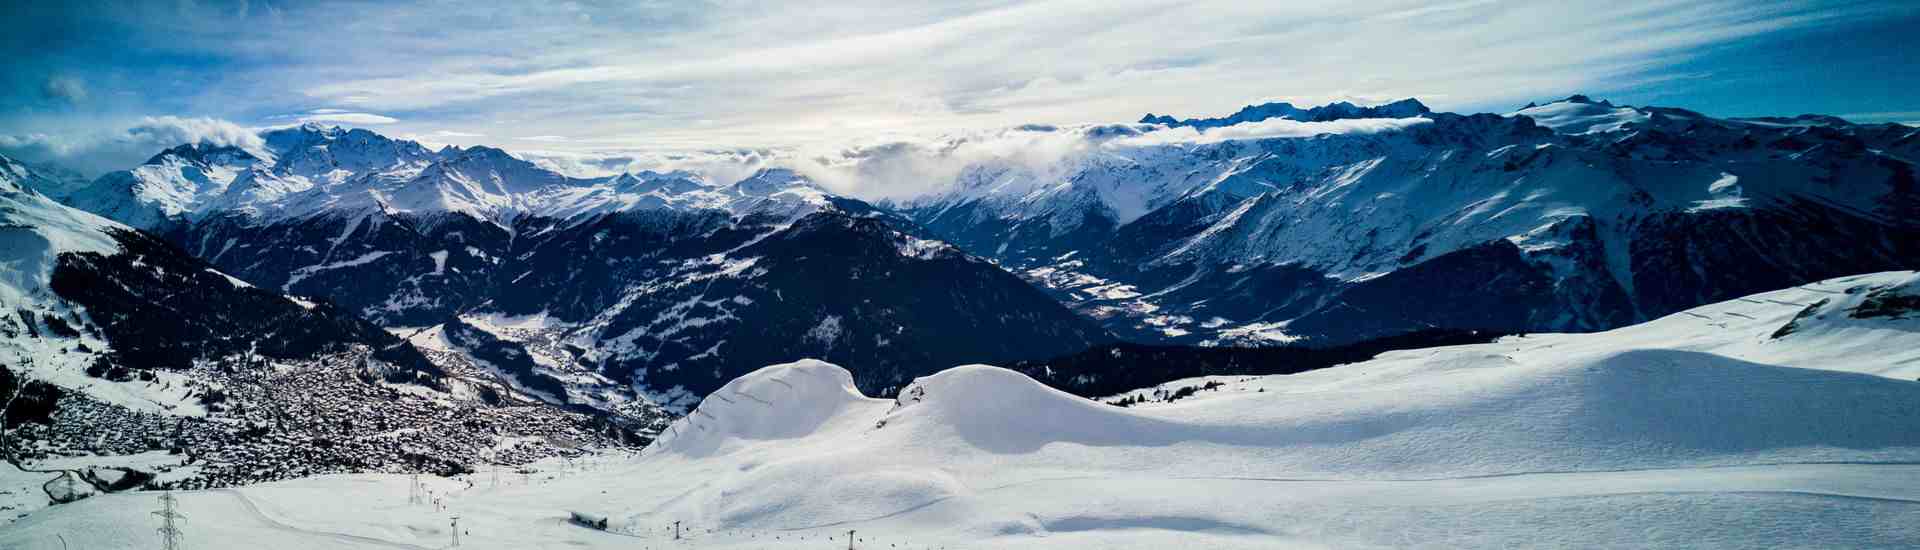 Taksidi - organizator najlepszych wyjazdów narciarskich i snowboardowych w Alpy!